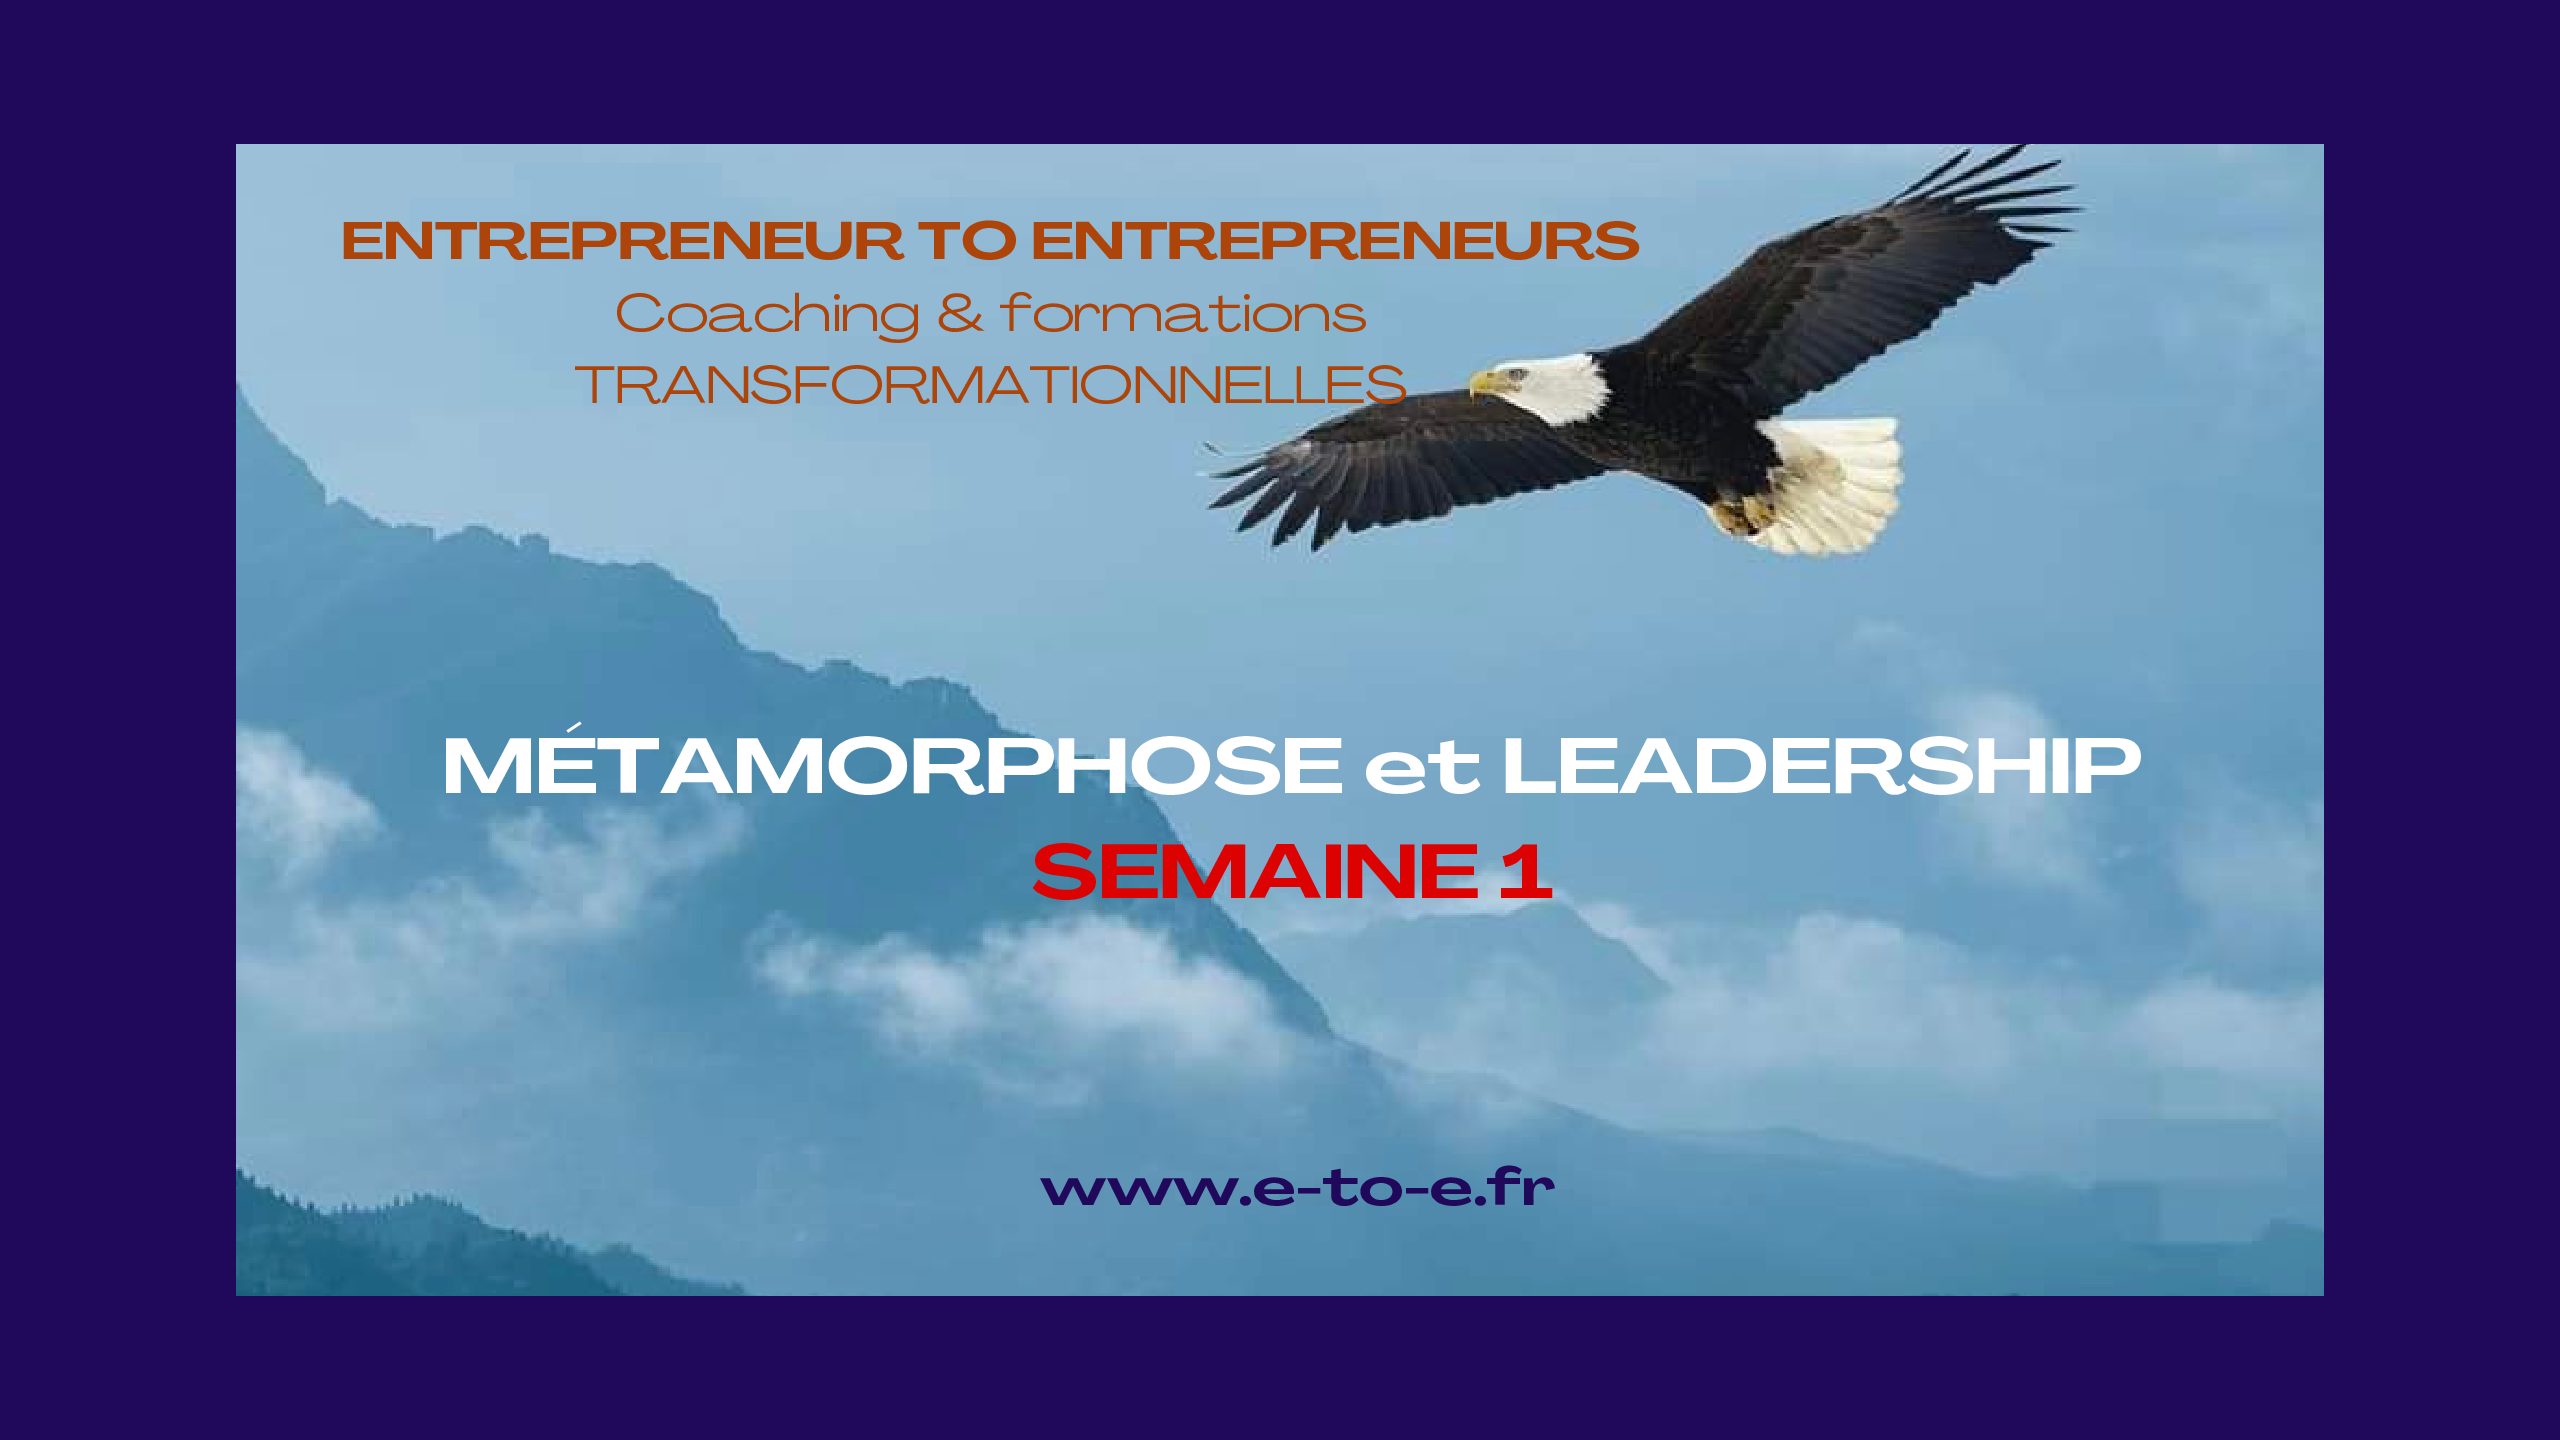 MÉTAMORPHOSE & LEADERSHIP SEMAINE 1